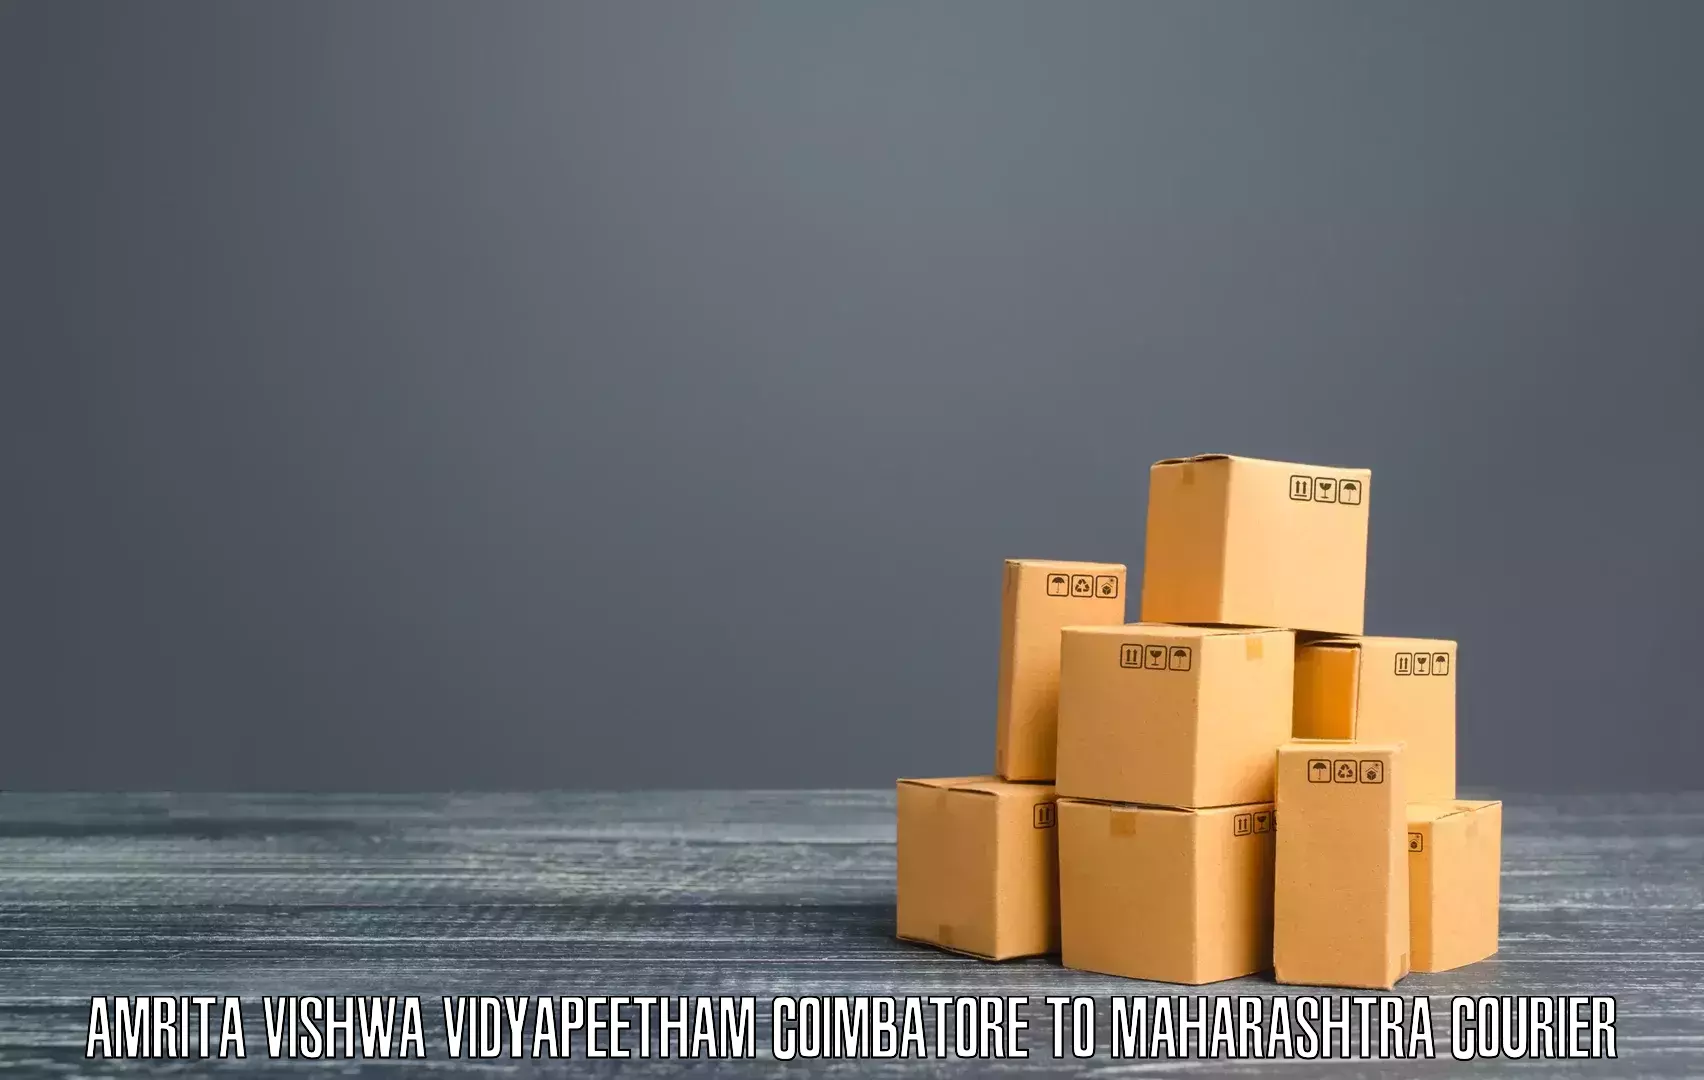 Cost-effective courier options Amrita Vishwa Vidyapeetham Coimbatore to Jawaharlal Nehru Port Nhava Sheva